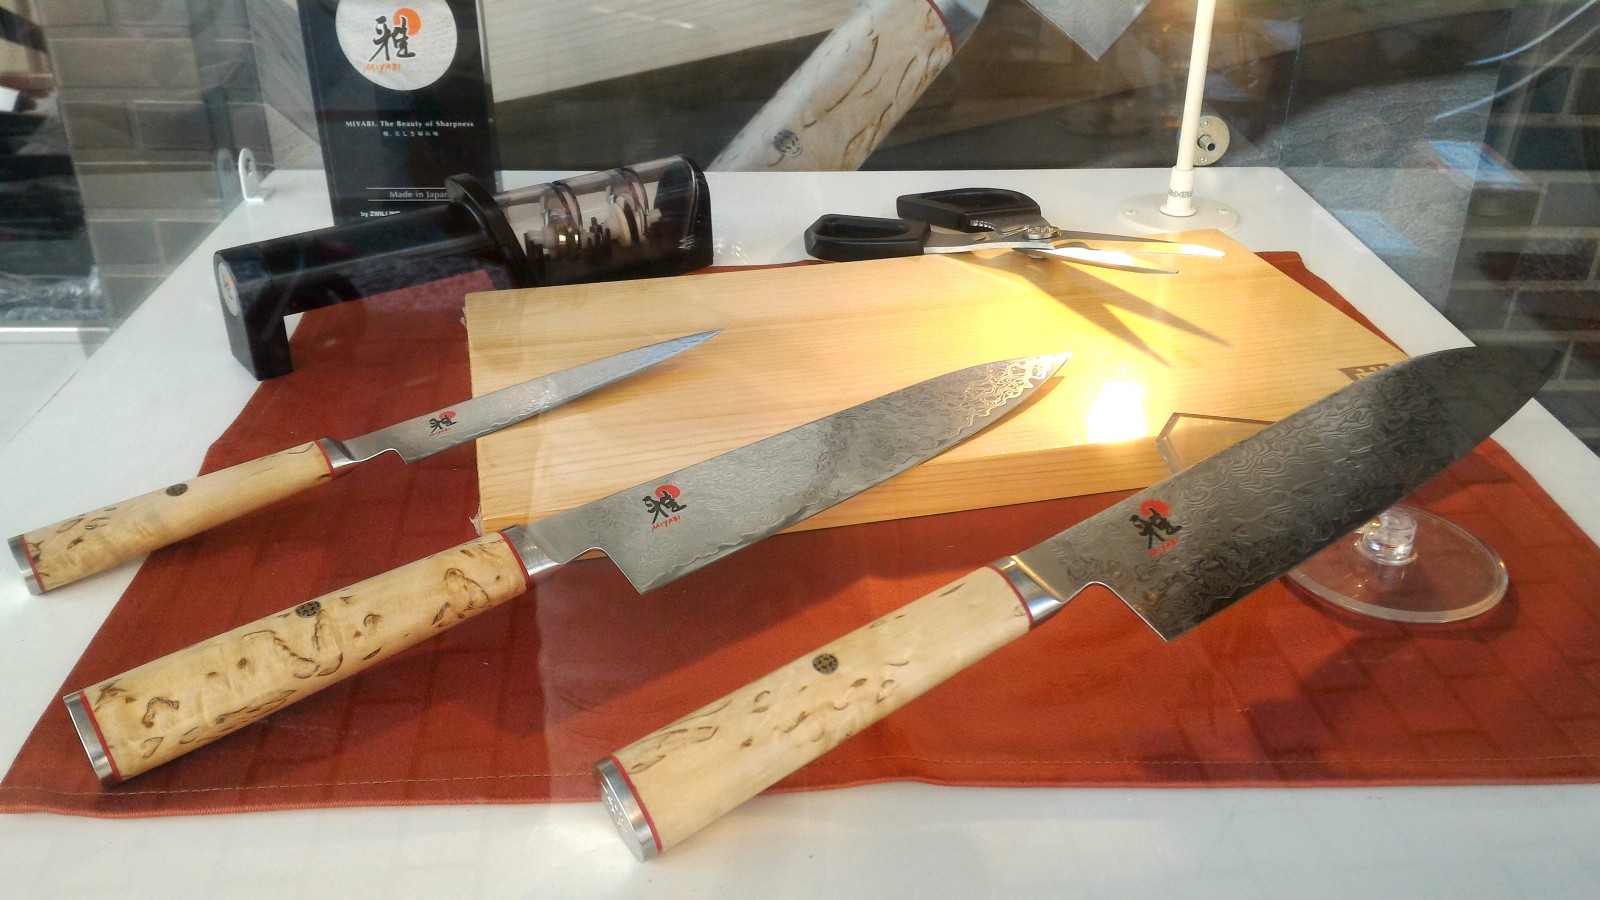 Shopping guide for Japanese knives